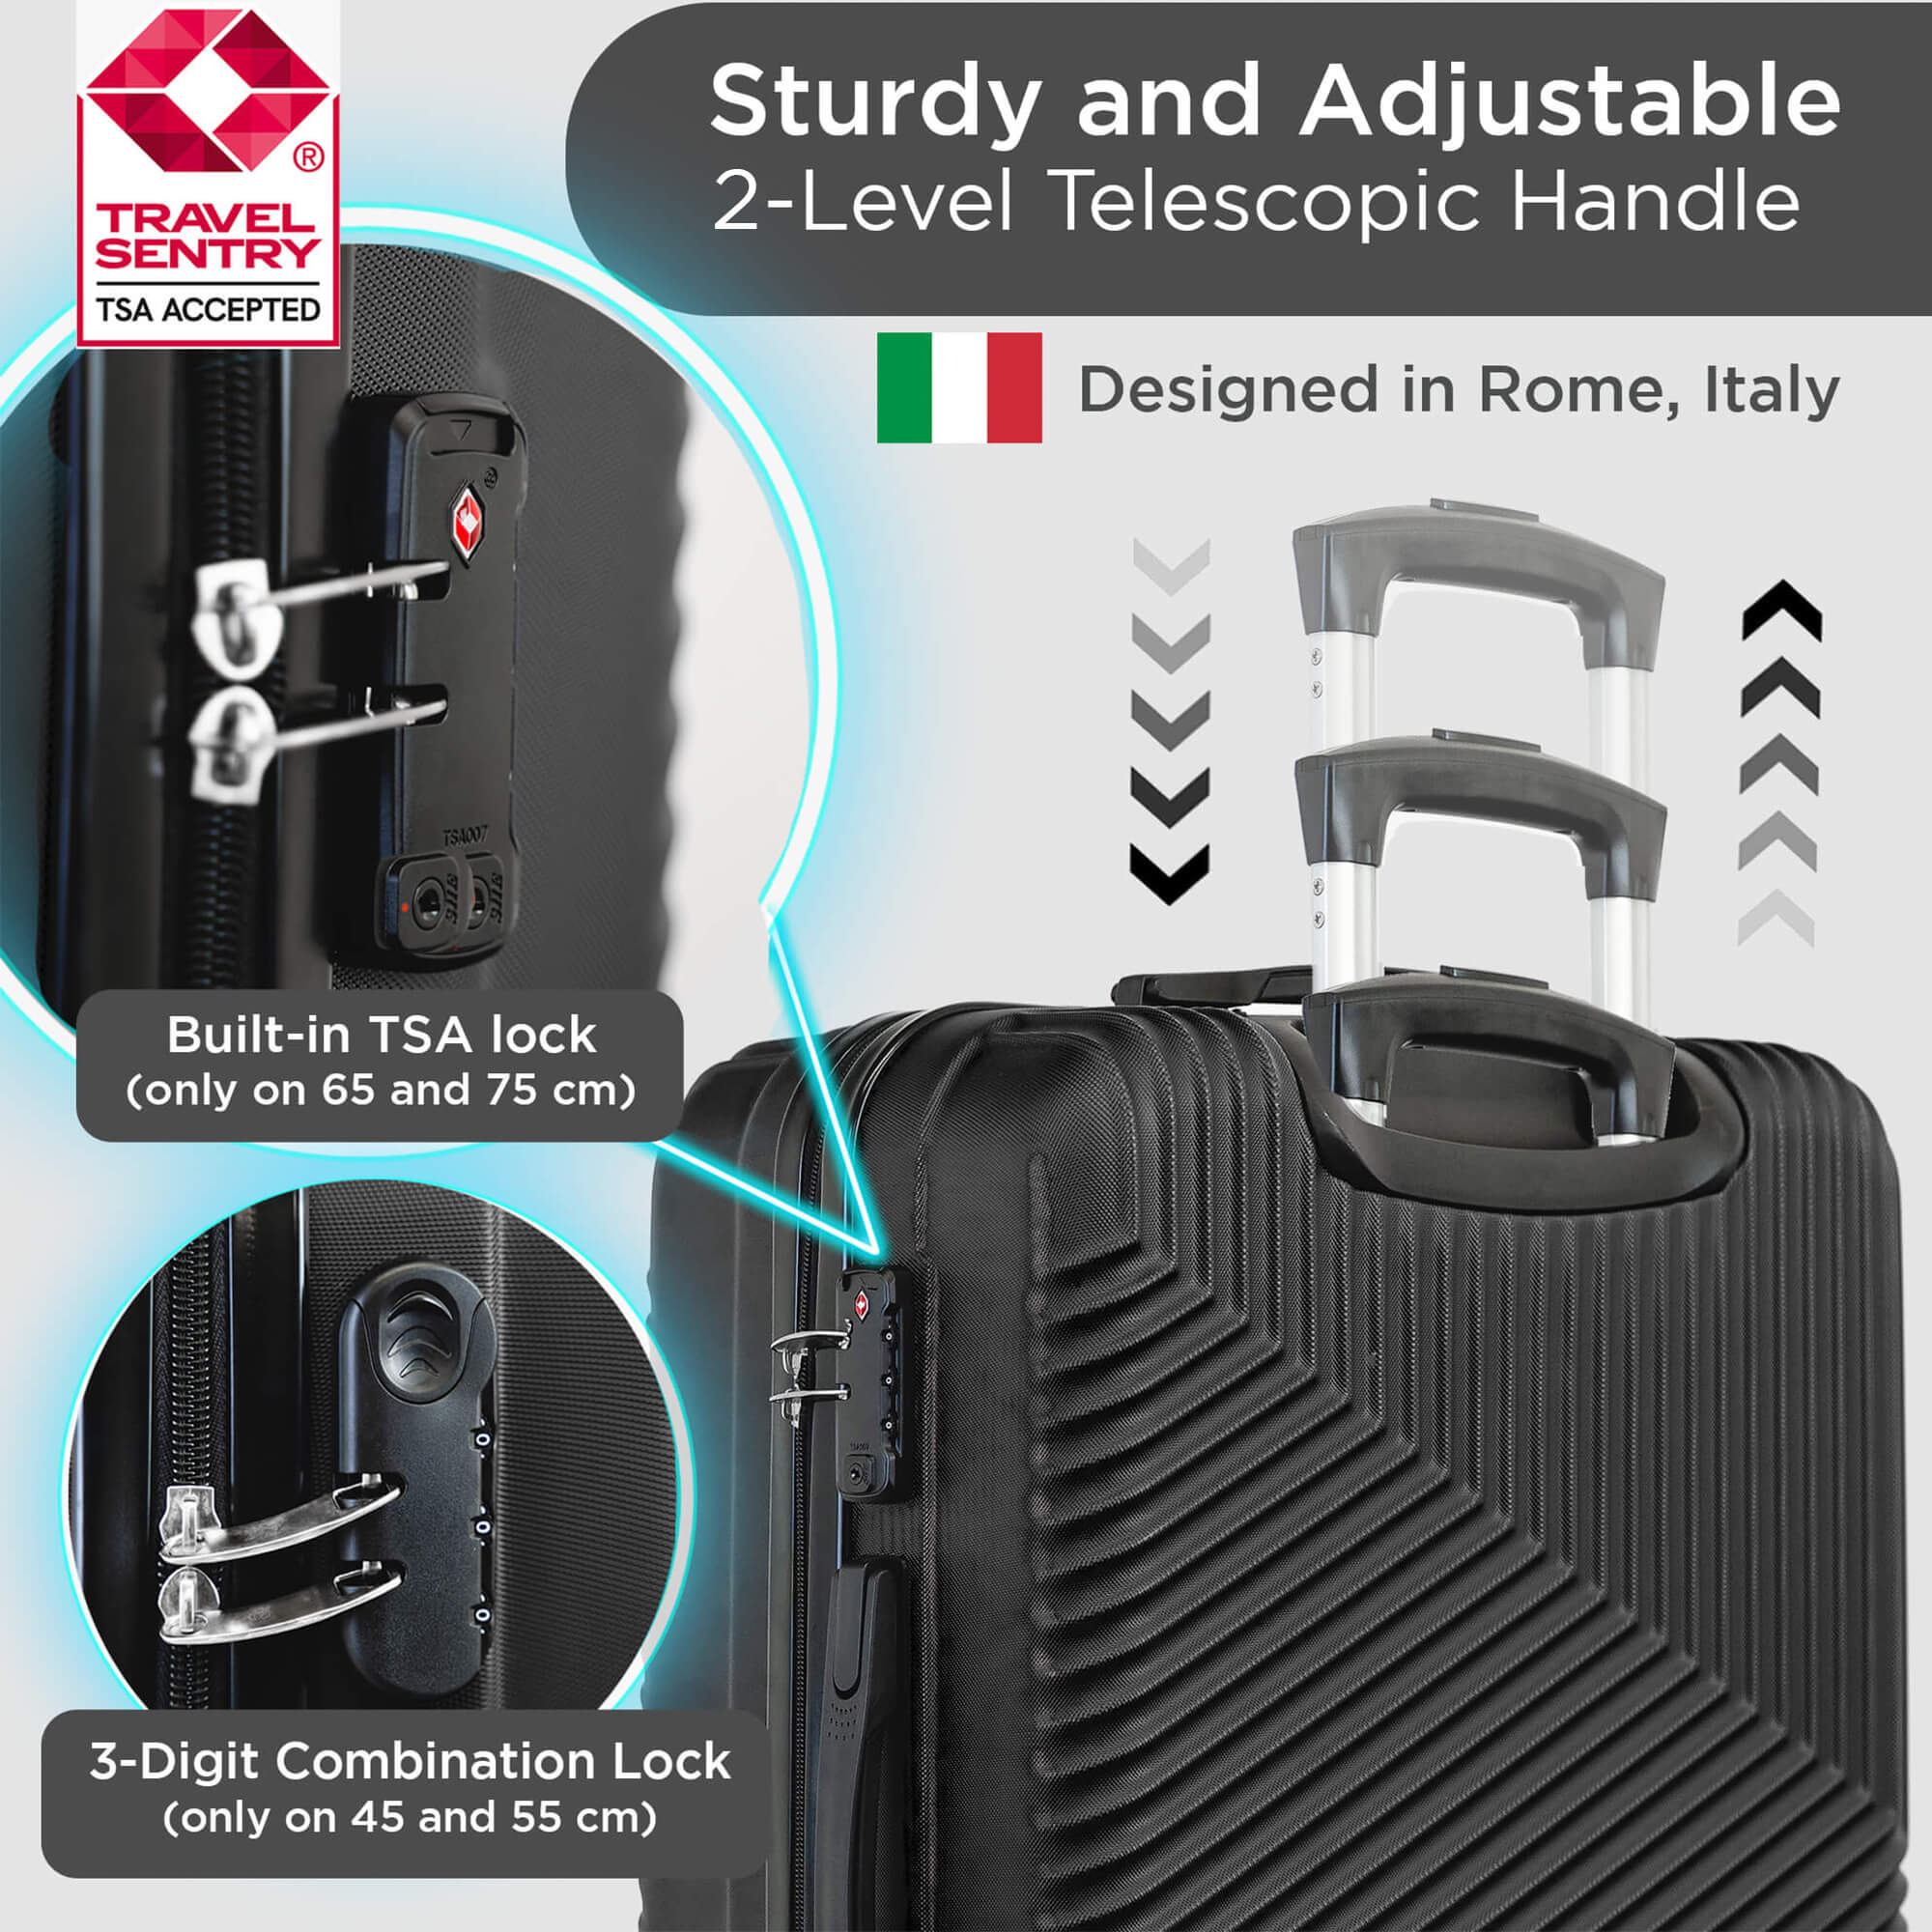 Juego de maletas rígidas Roma con ruedas giratorias de 360°, candado TSA y funda protectora